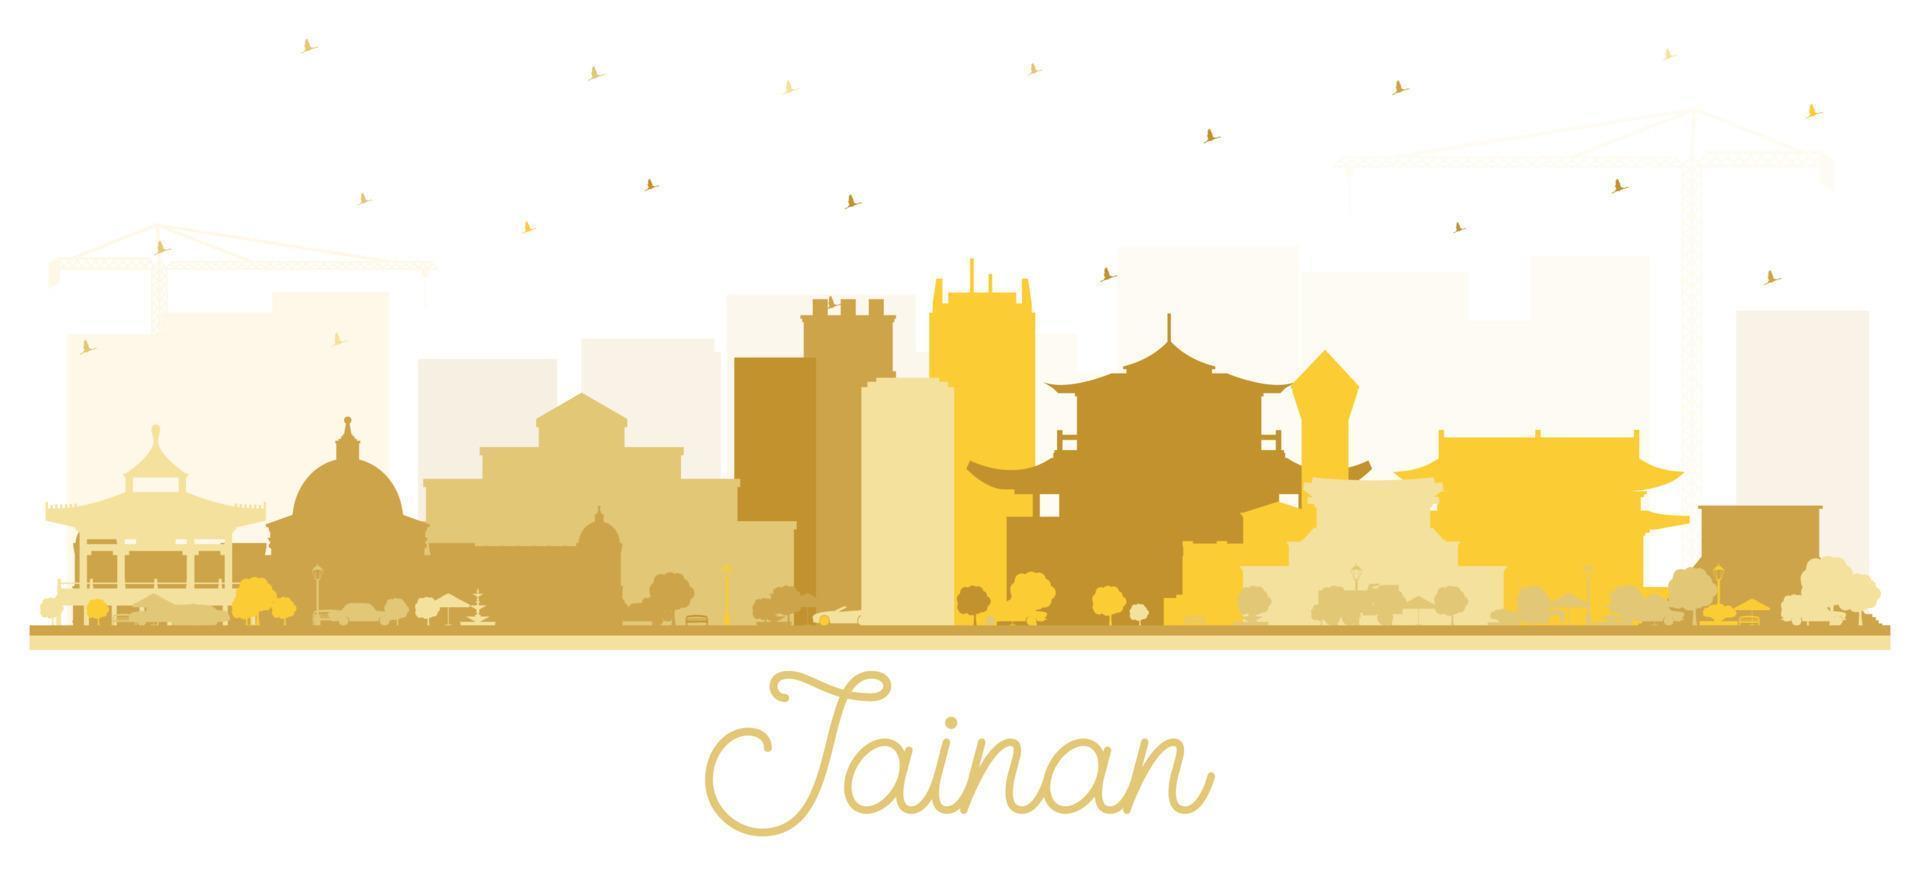 tainan taiwan city skyline silhouette mit goldenen gebäuden isoliert auf weiß. vektor